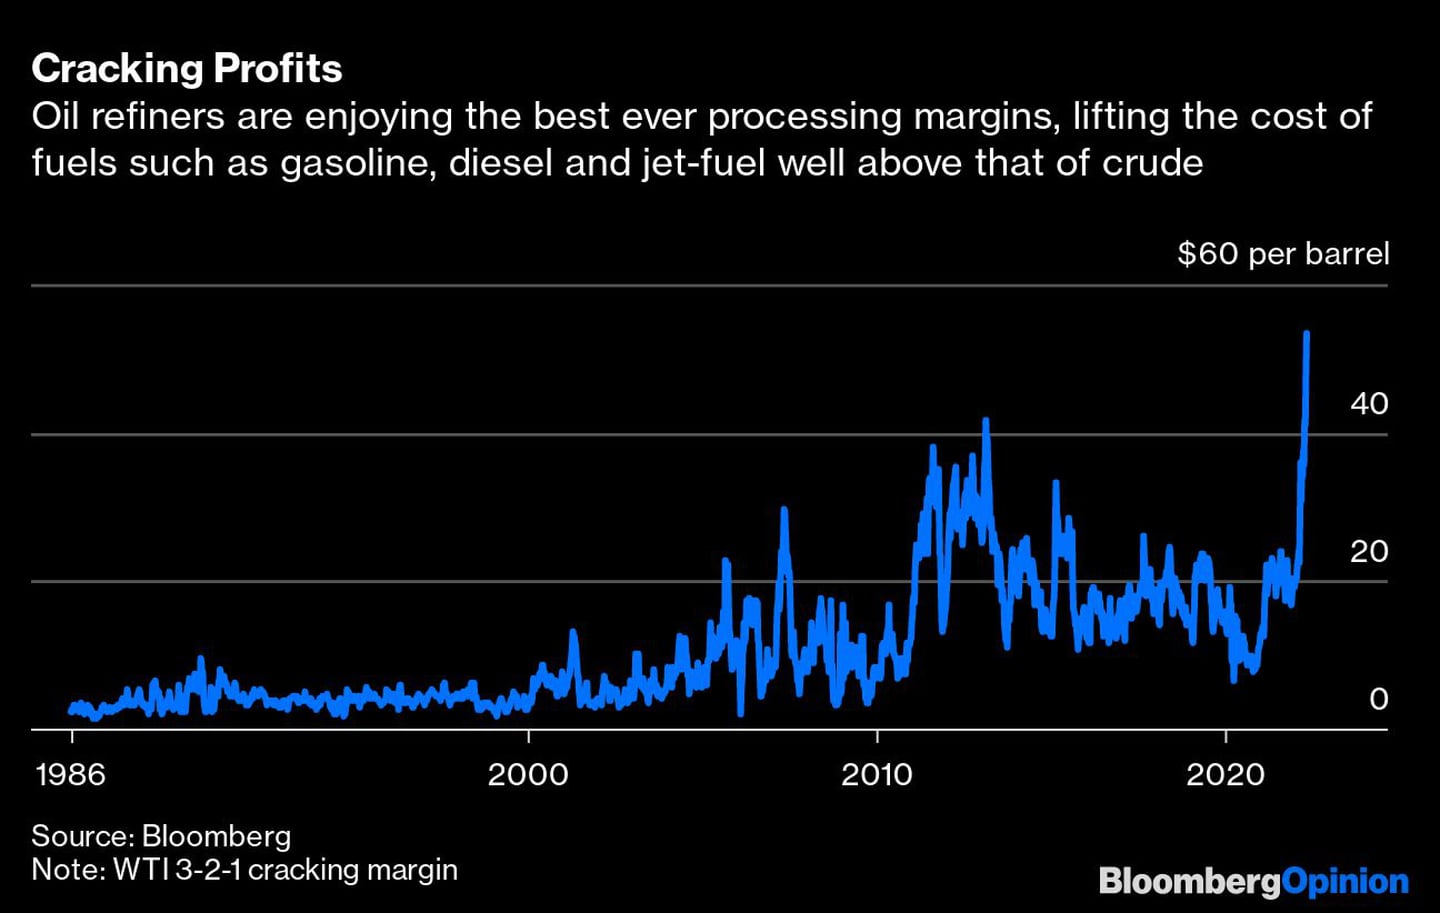 Las refinerías disfrutan de los mejores márgenes de procesamiento, subiendo el costo de los combustiblesdfd